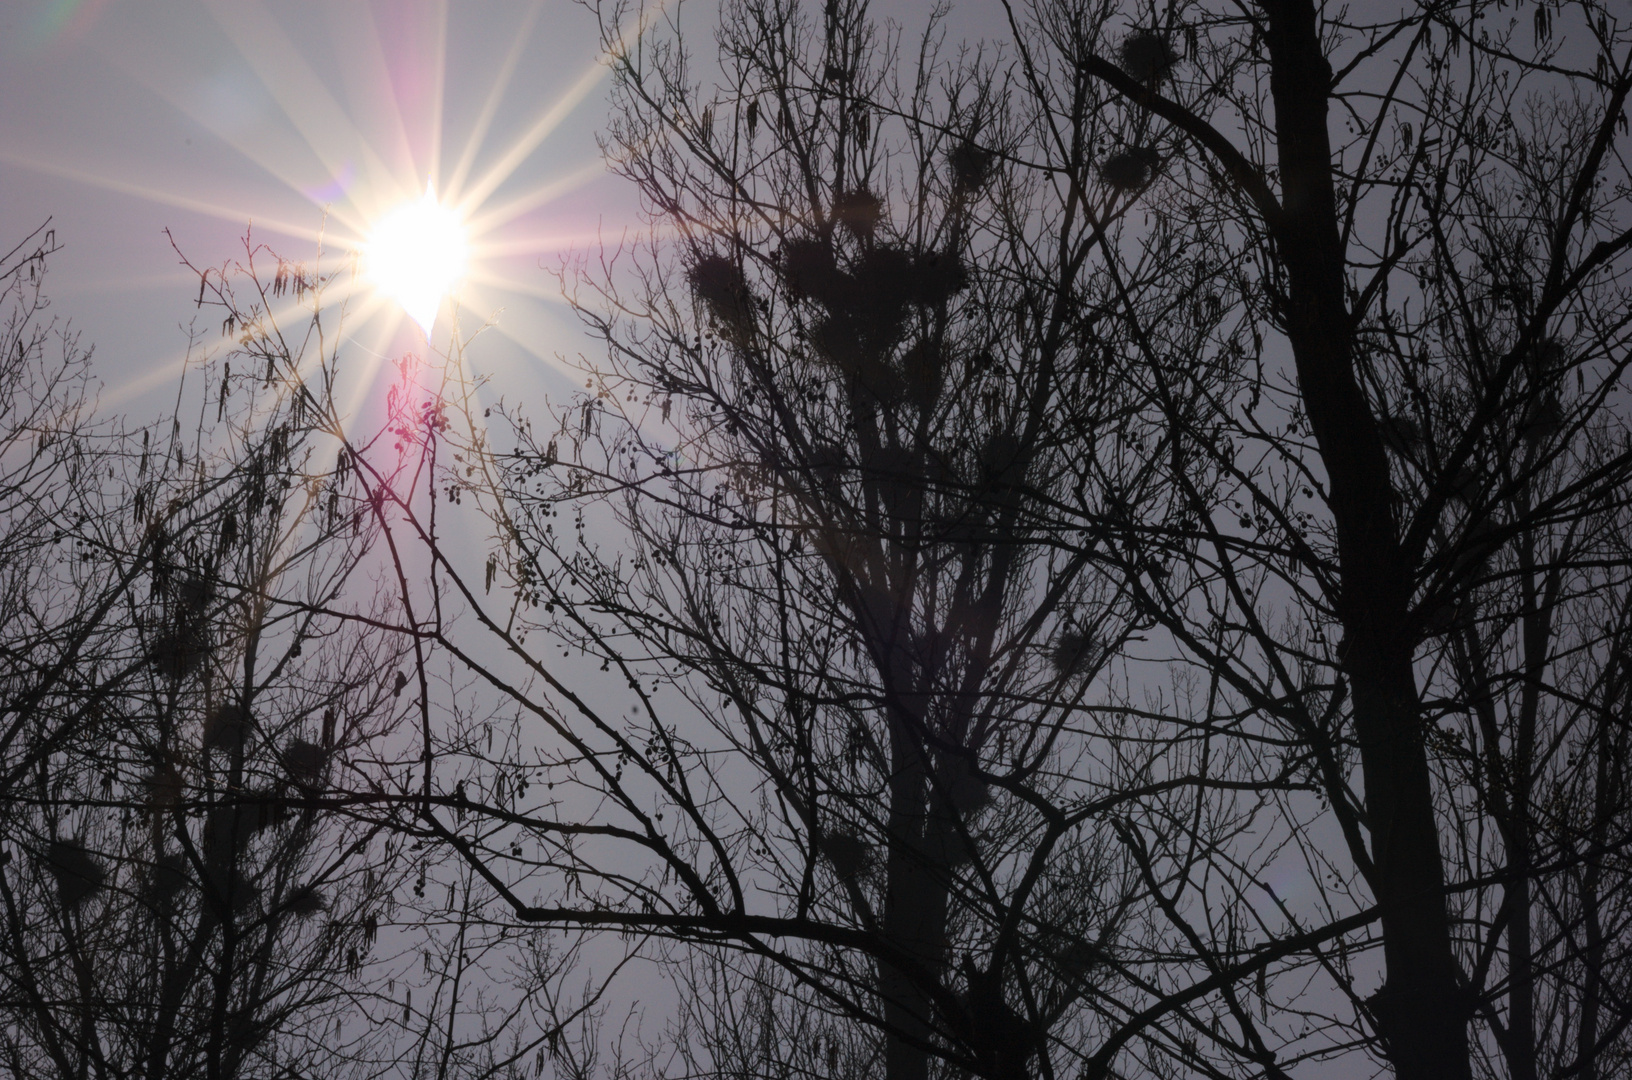 Sonnenfinsternis 2015 Lahr im Schwarzwald ohne Filter